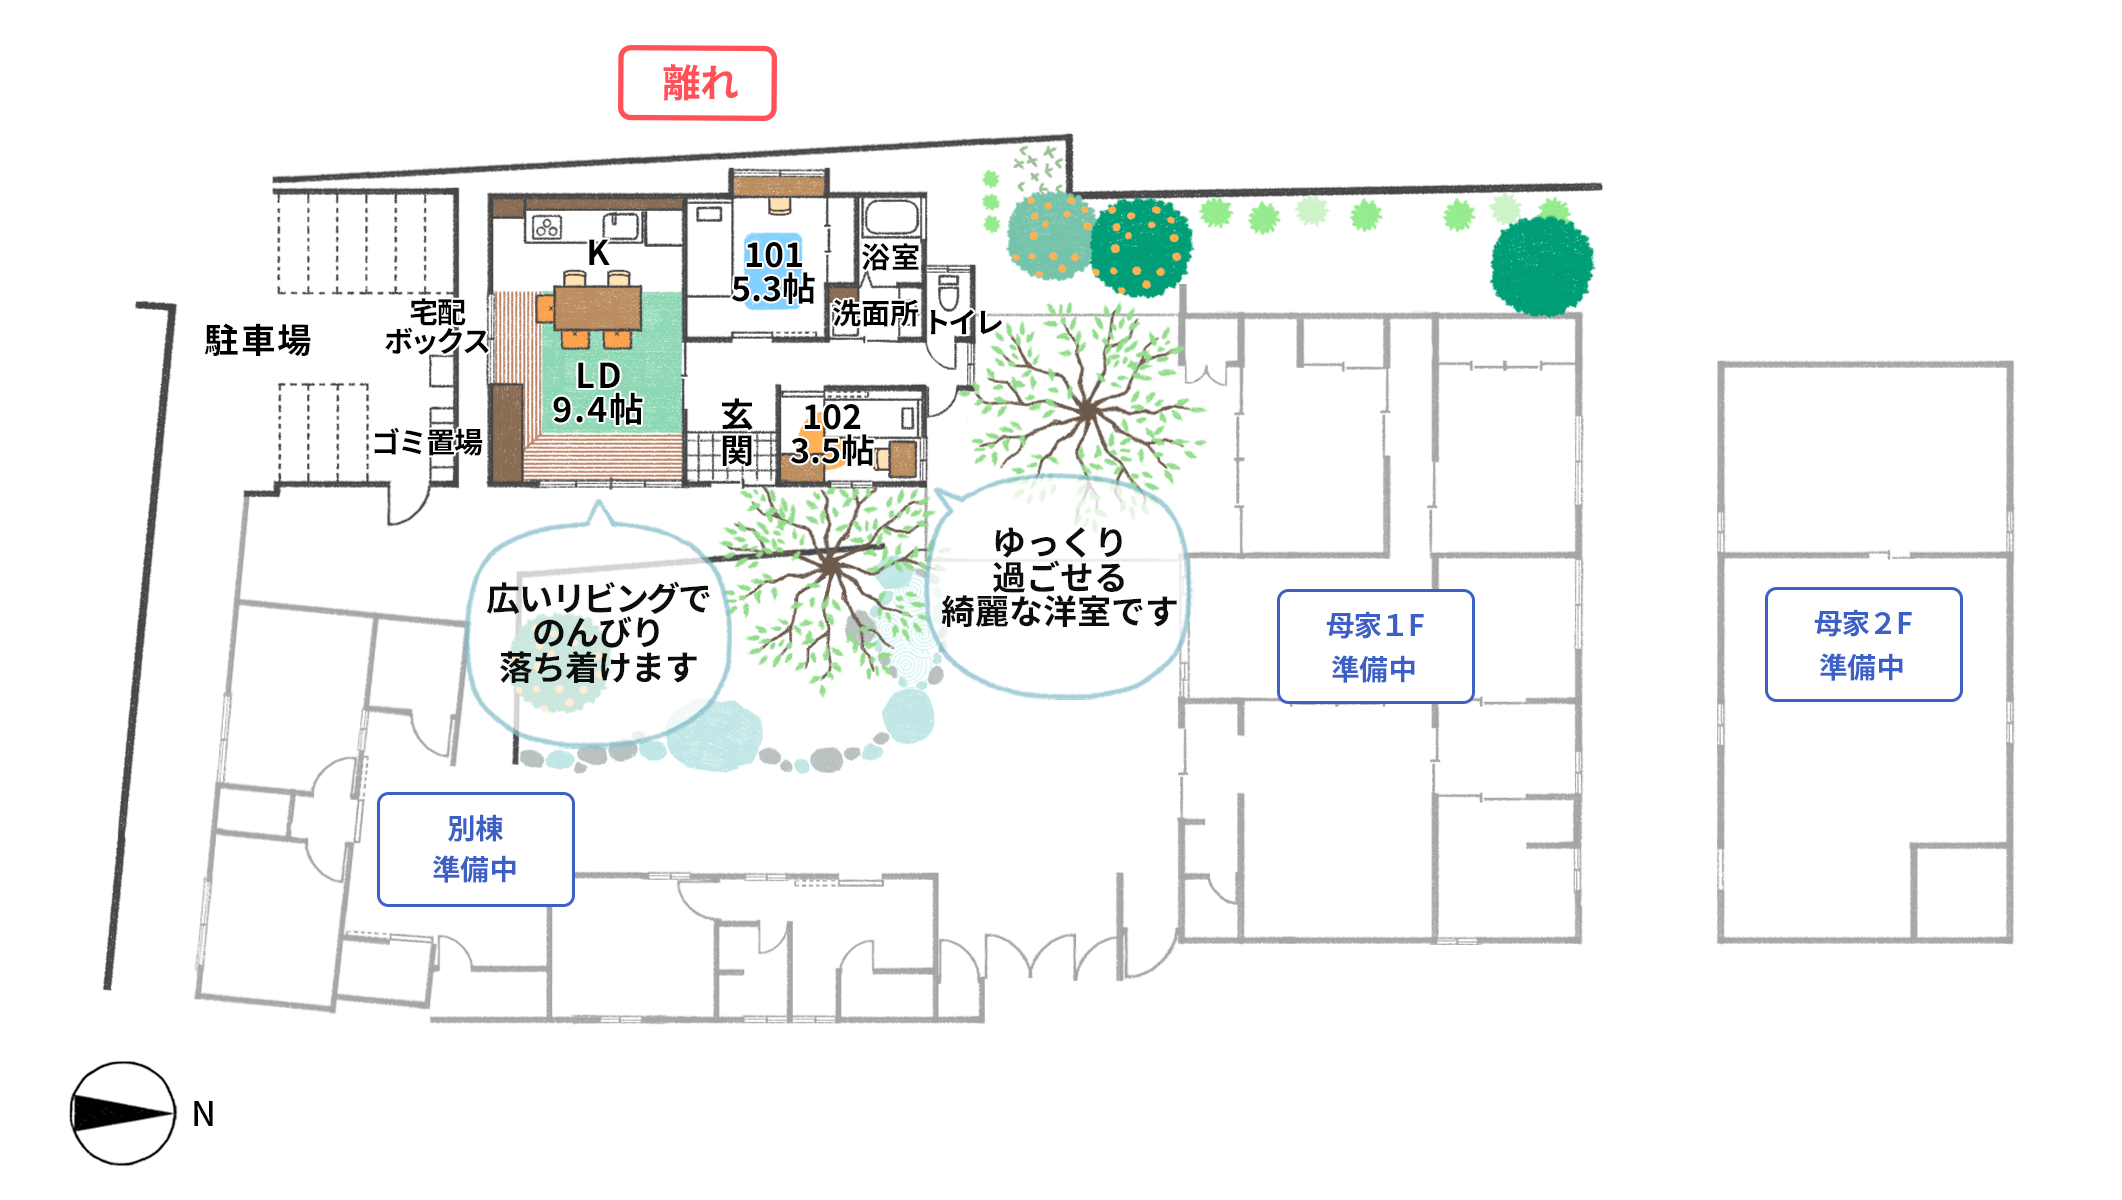 大阪府堺市 全国で50棟のシェアハウスを運営するhidamariが アトリエgivens一級建築士事務所と協業しシェアハウス 柿の木テラス をオープン Hidamari株式会社のプレスリリース